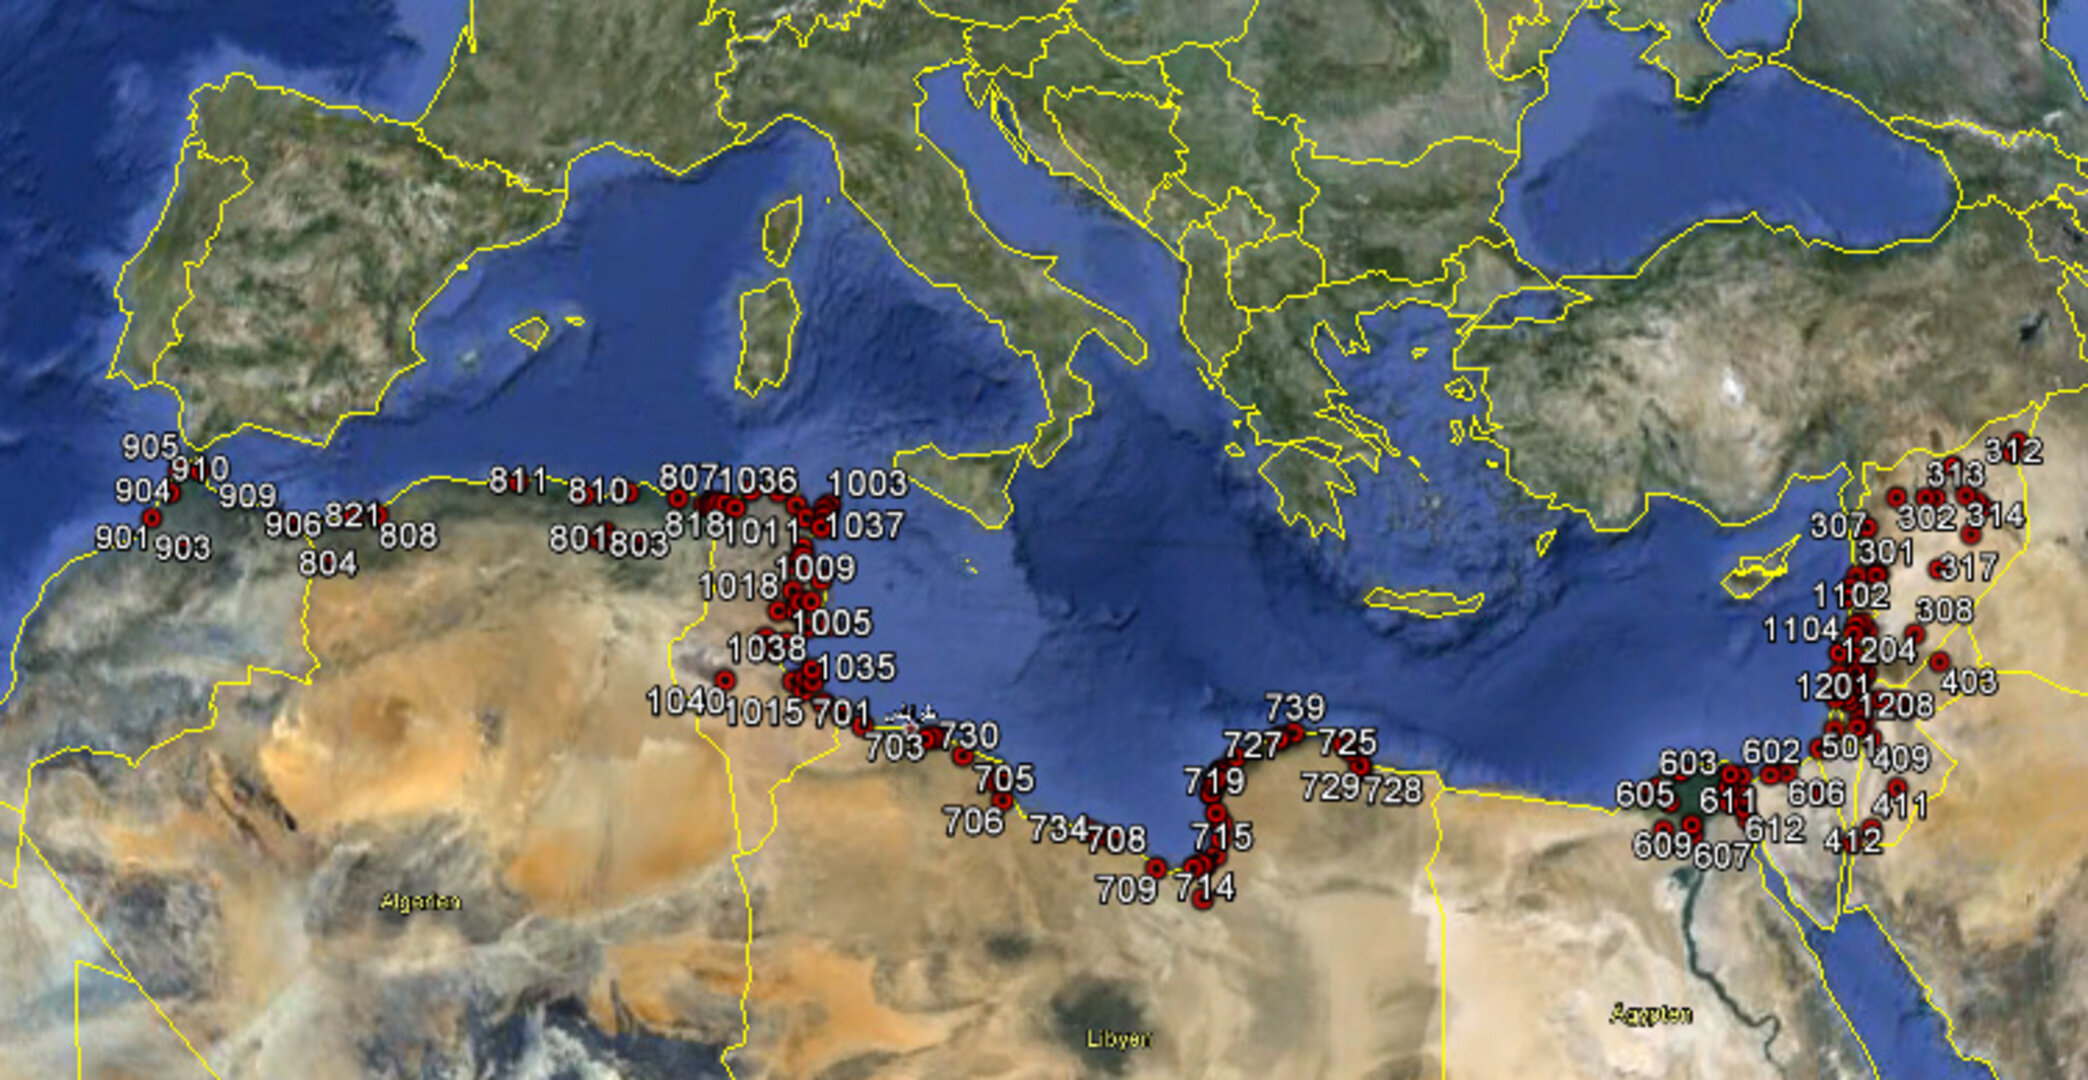 Mediterranean Basin test sites